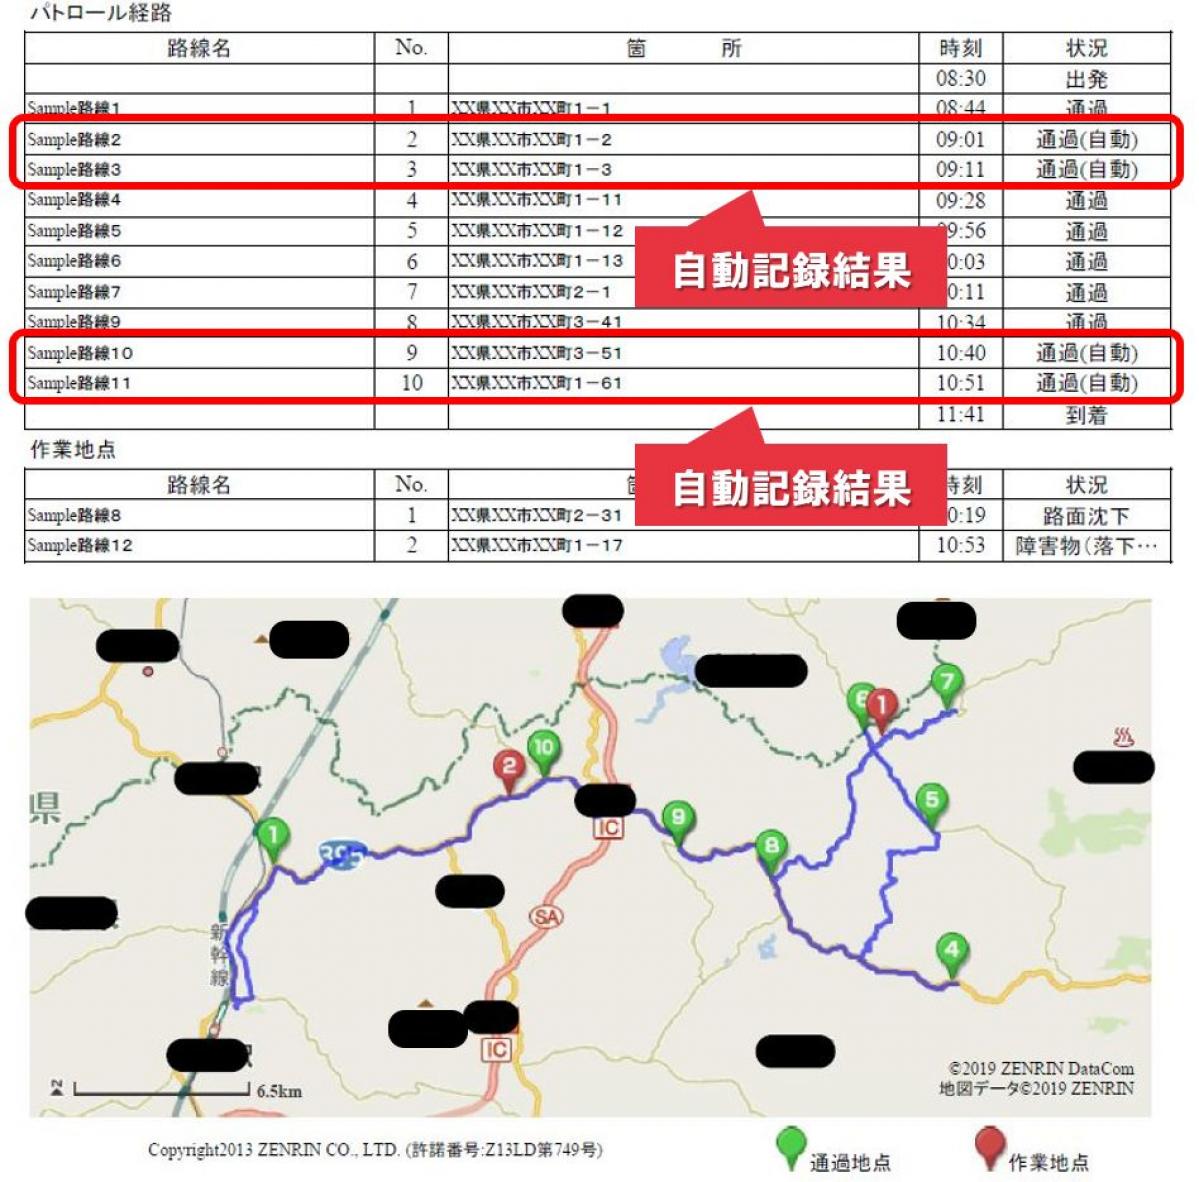 富士通交通・道路データサービス：道路パトロール支援サービス「通過地点自動記録」機能を提供開始